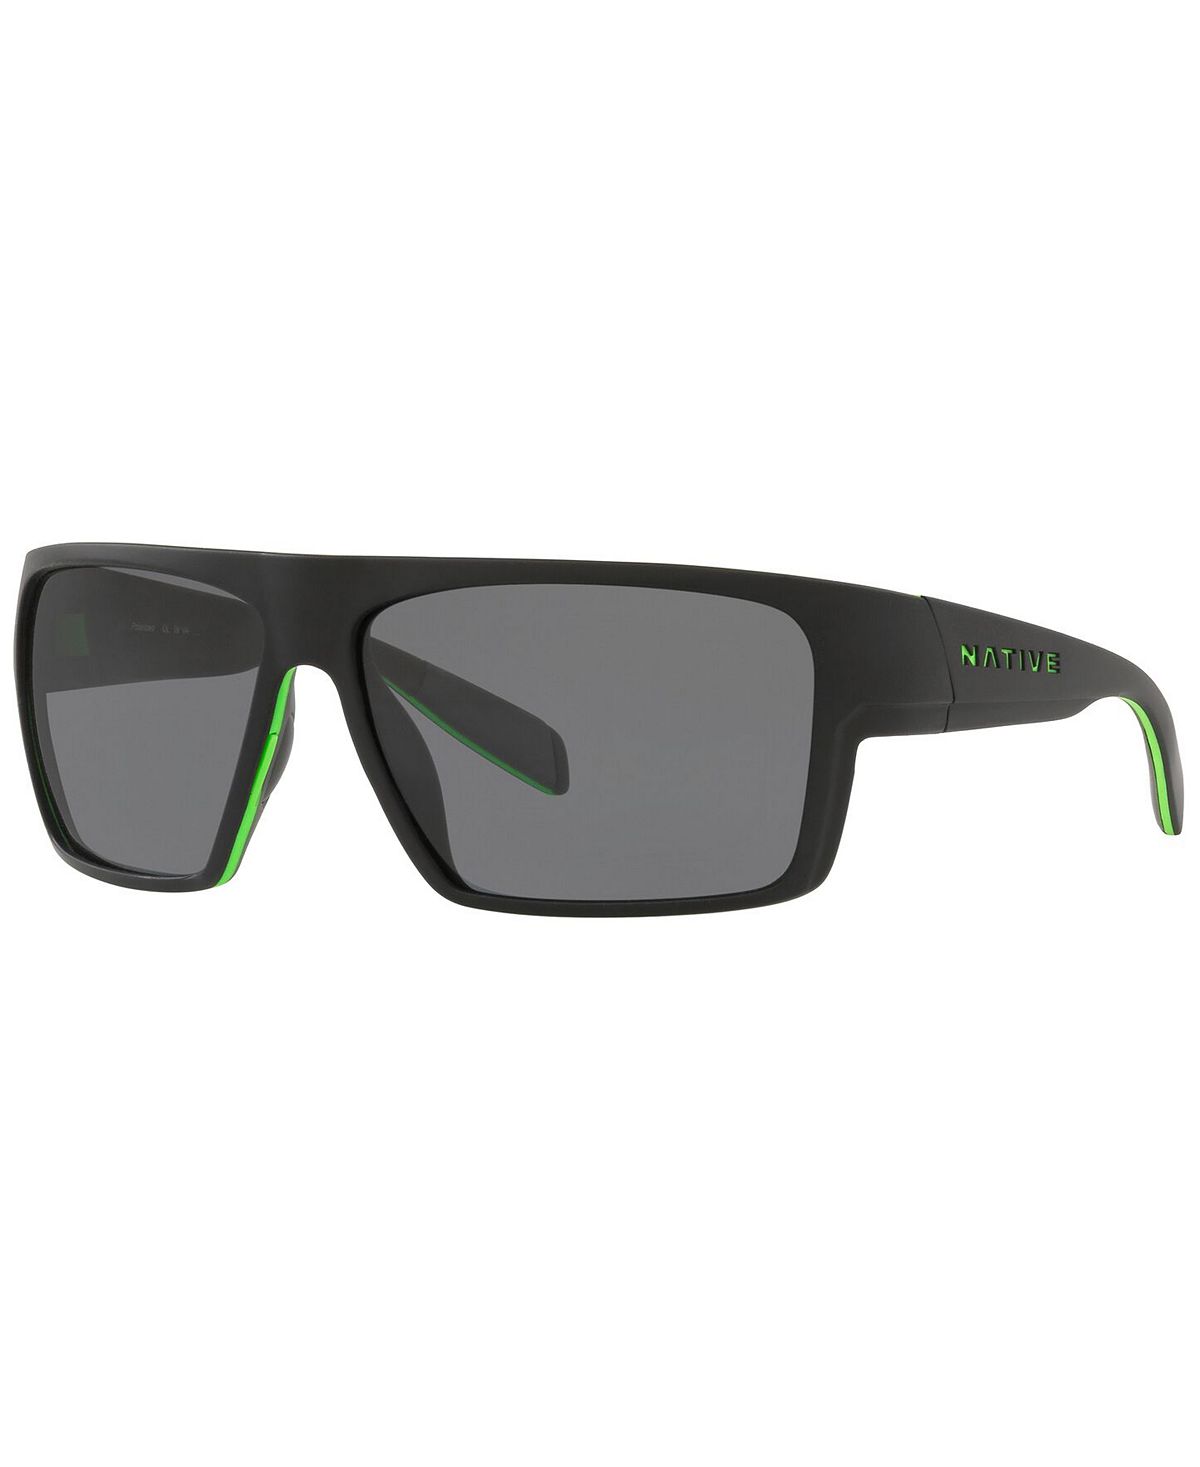 Мужские поляризованные солнцезащитные очки Native, XD9010 62 Native Eyewear кроссовки replay tennet heat black grey green